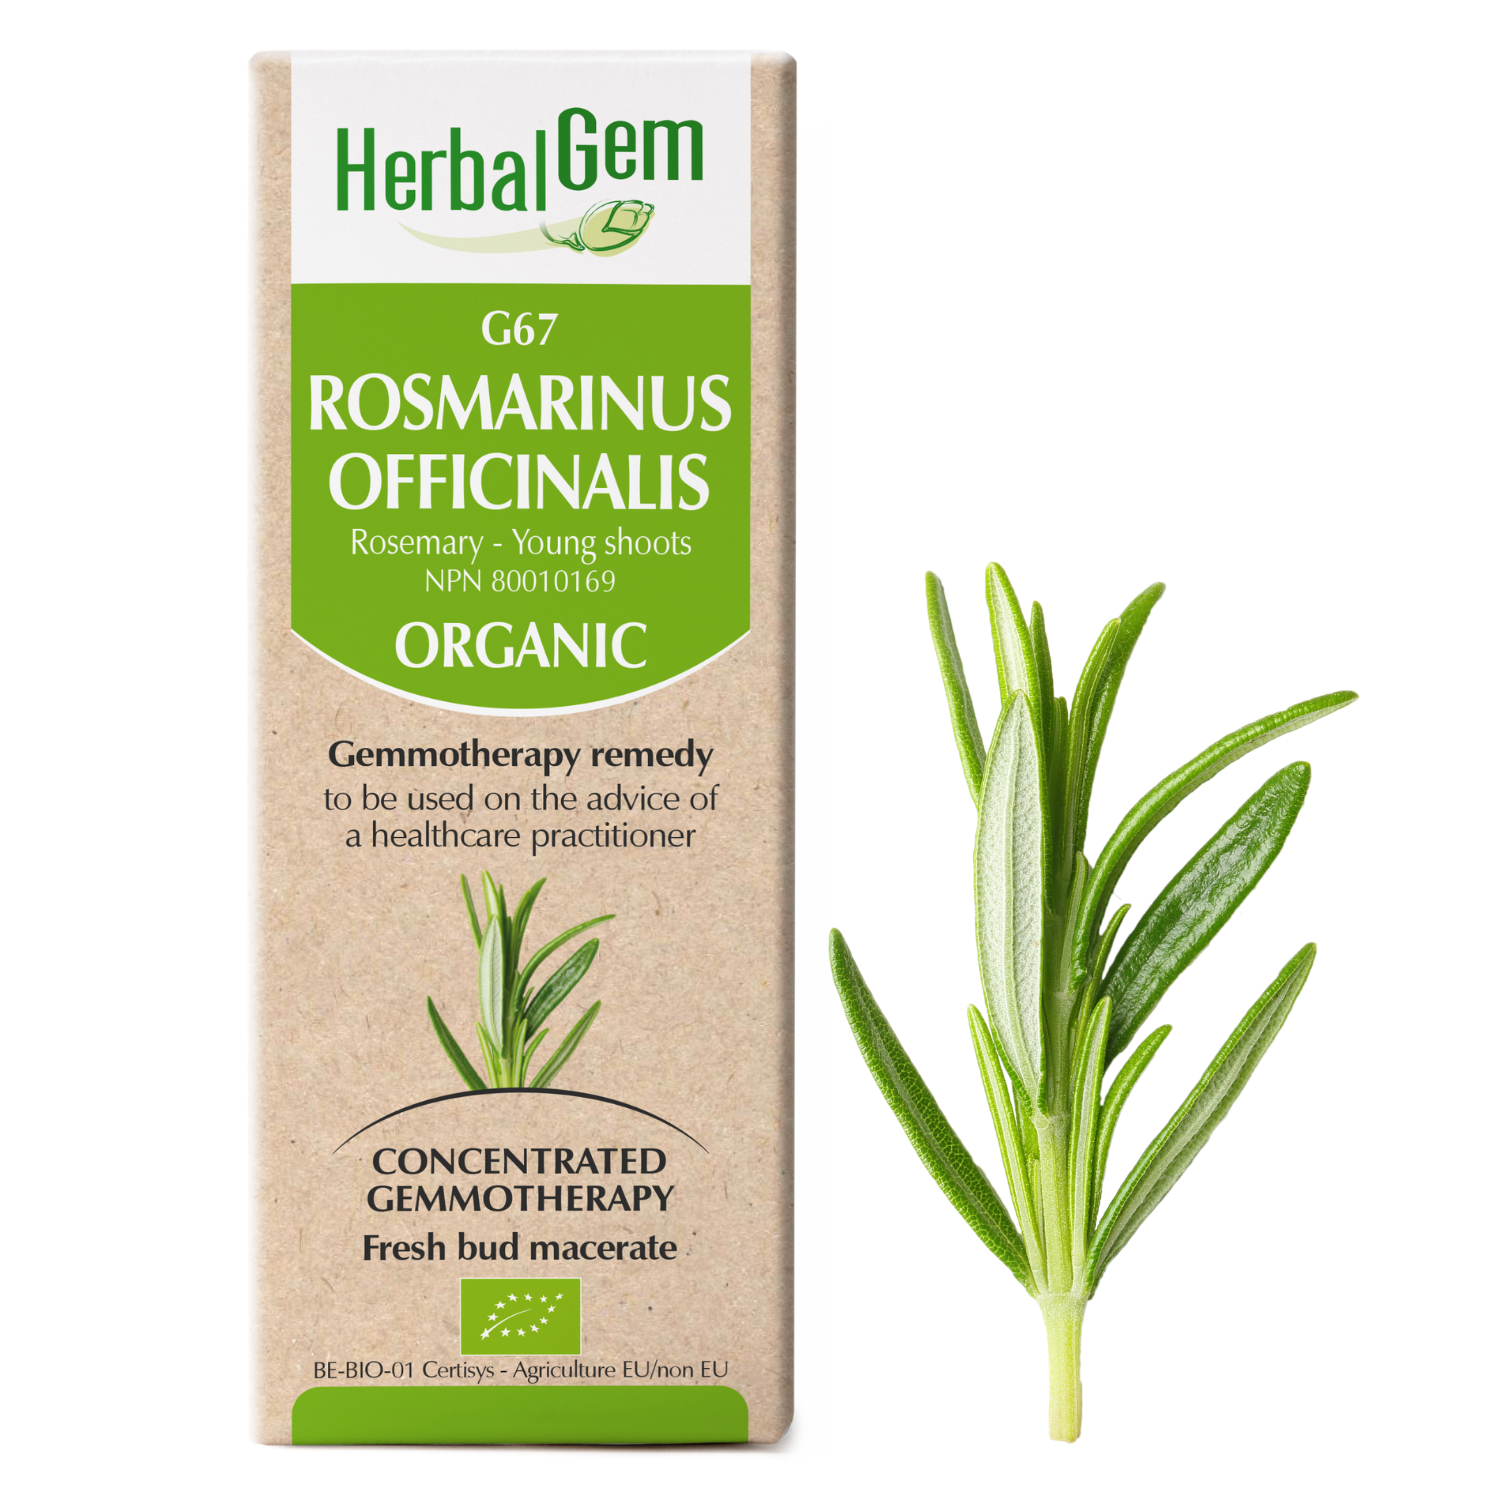 G67 Rosmarinus officinalis Gemmotherapy Organic, Herbalgem